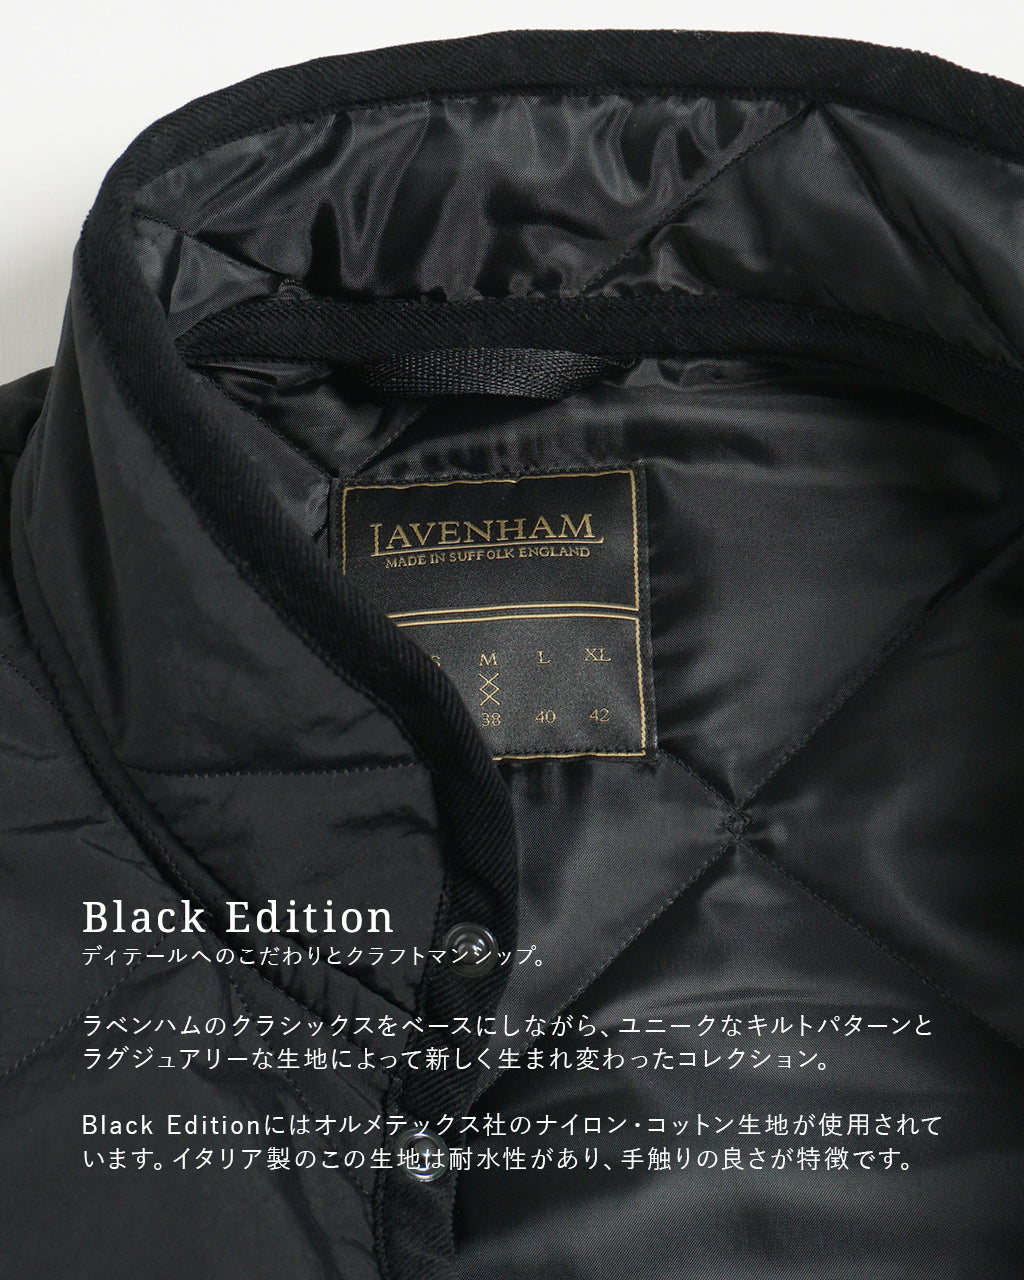 LAVENHAM ラベンハム ブラック エディション ミックフィールド メンズ BLACK EDITION MICKFIELD MENS ベスト ジレ メンズ  LV7023【送料無料】